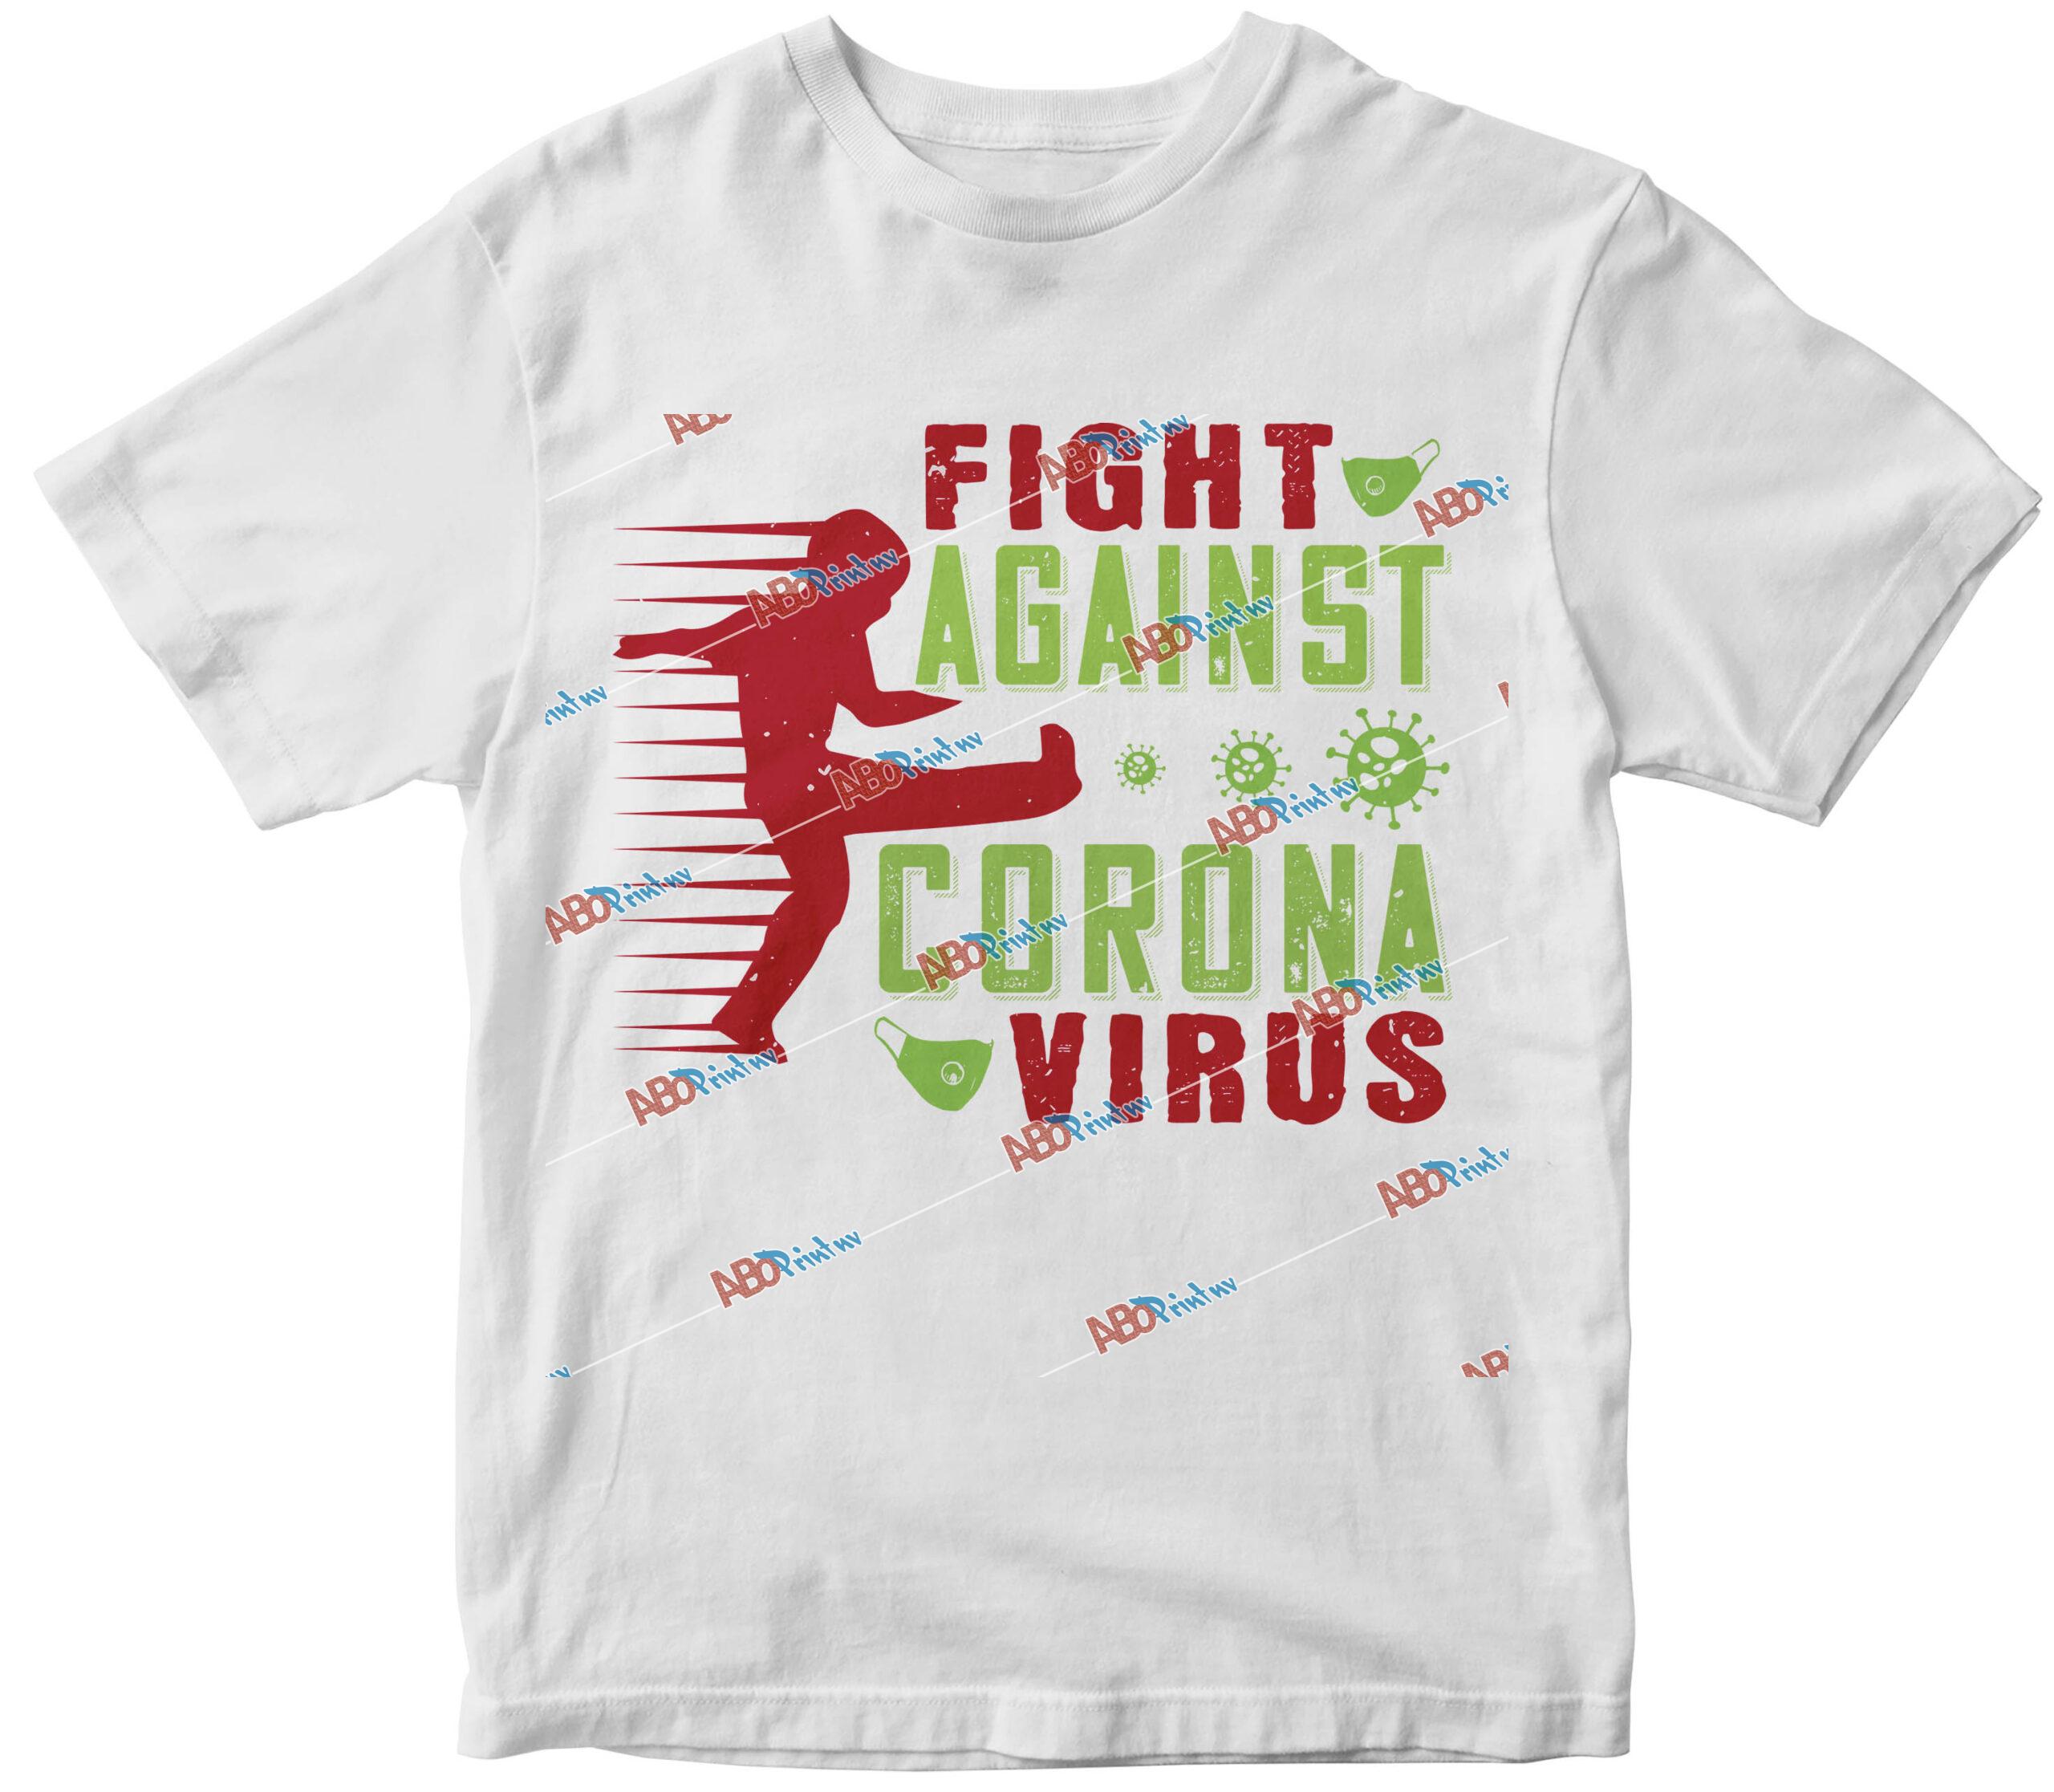 fight against virus.jpg